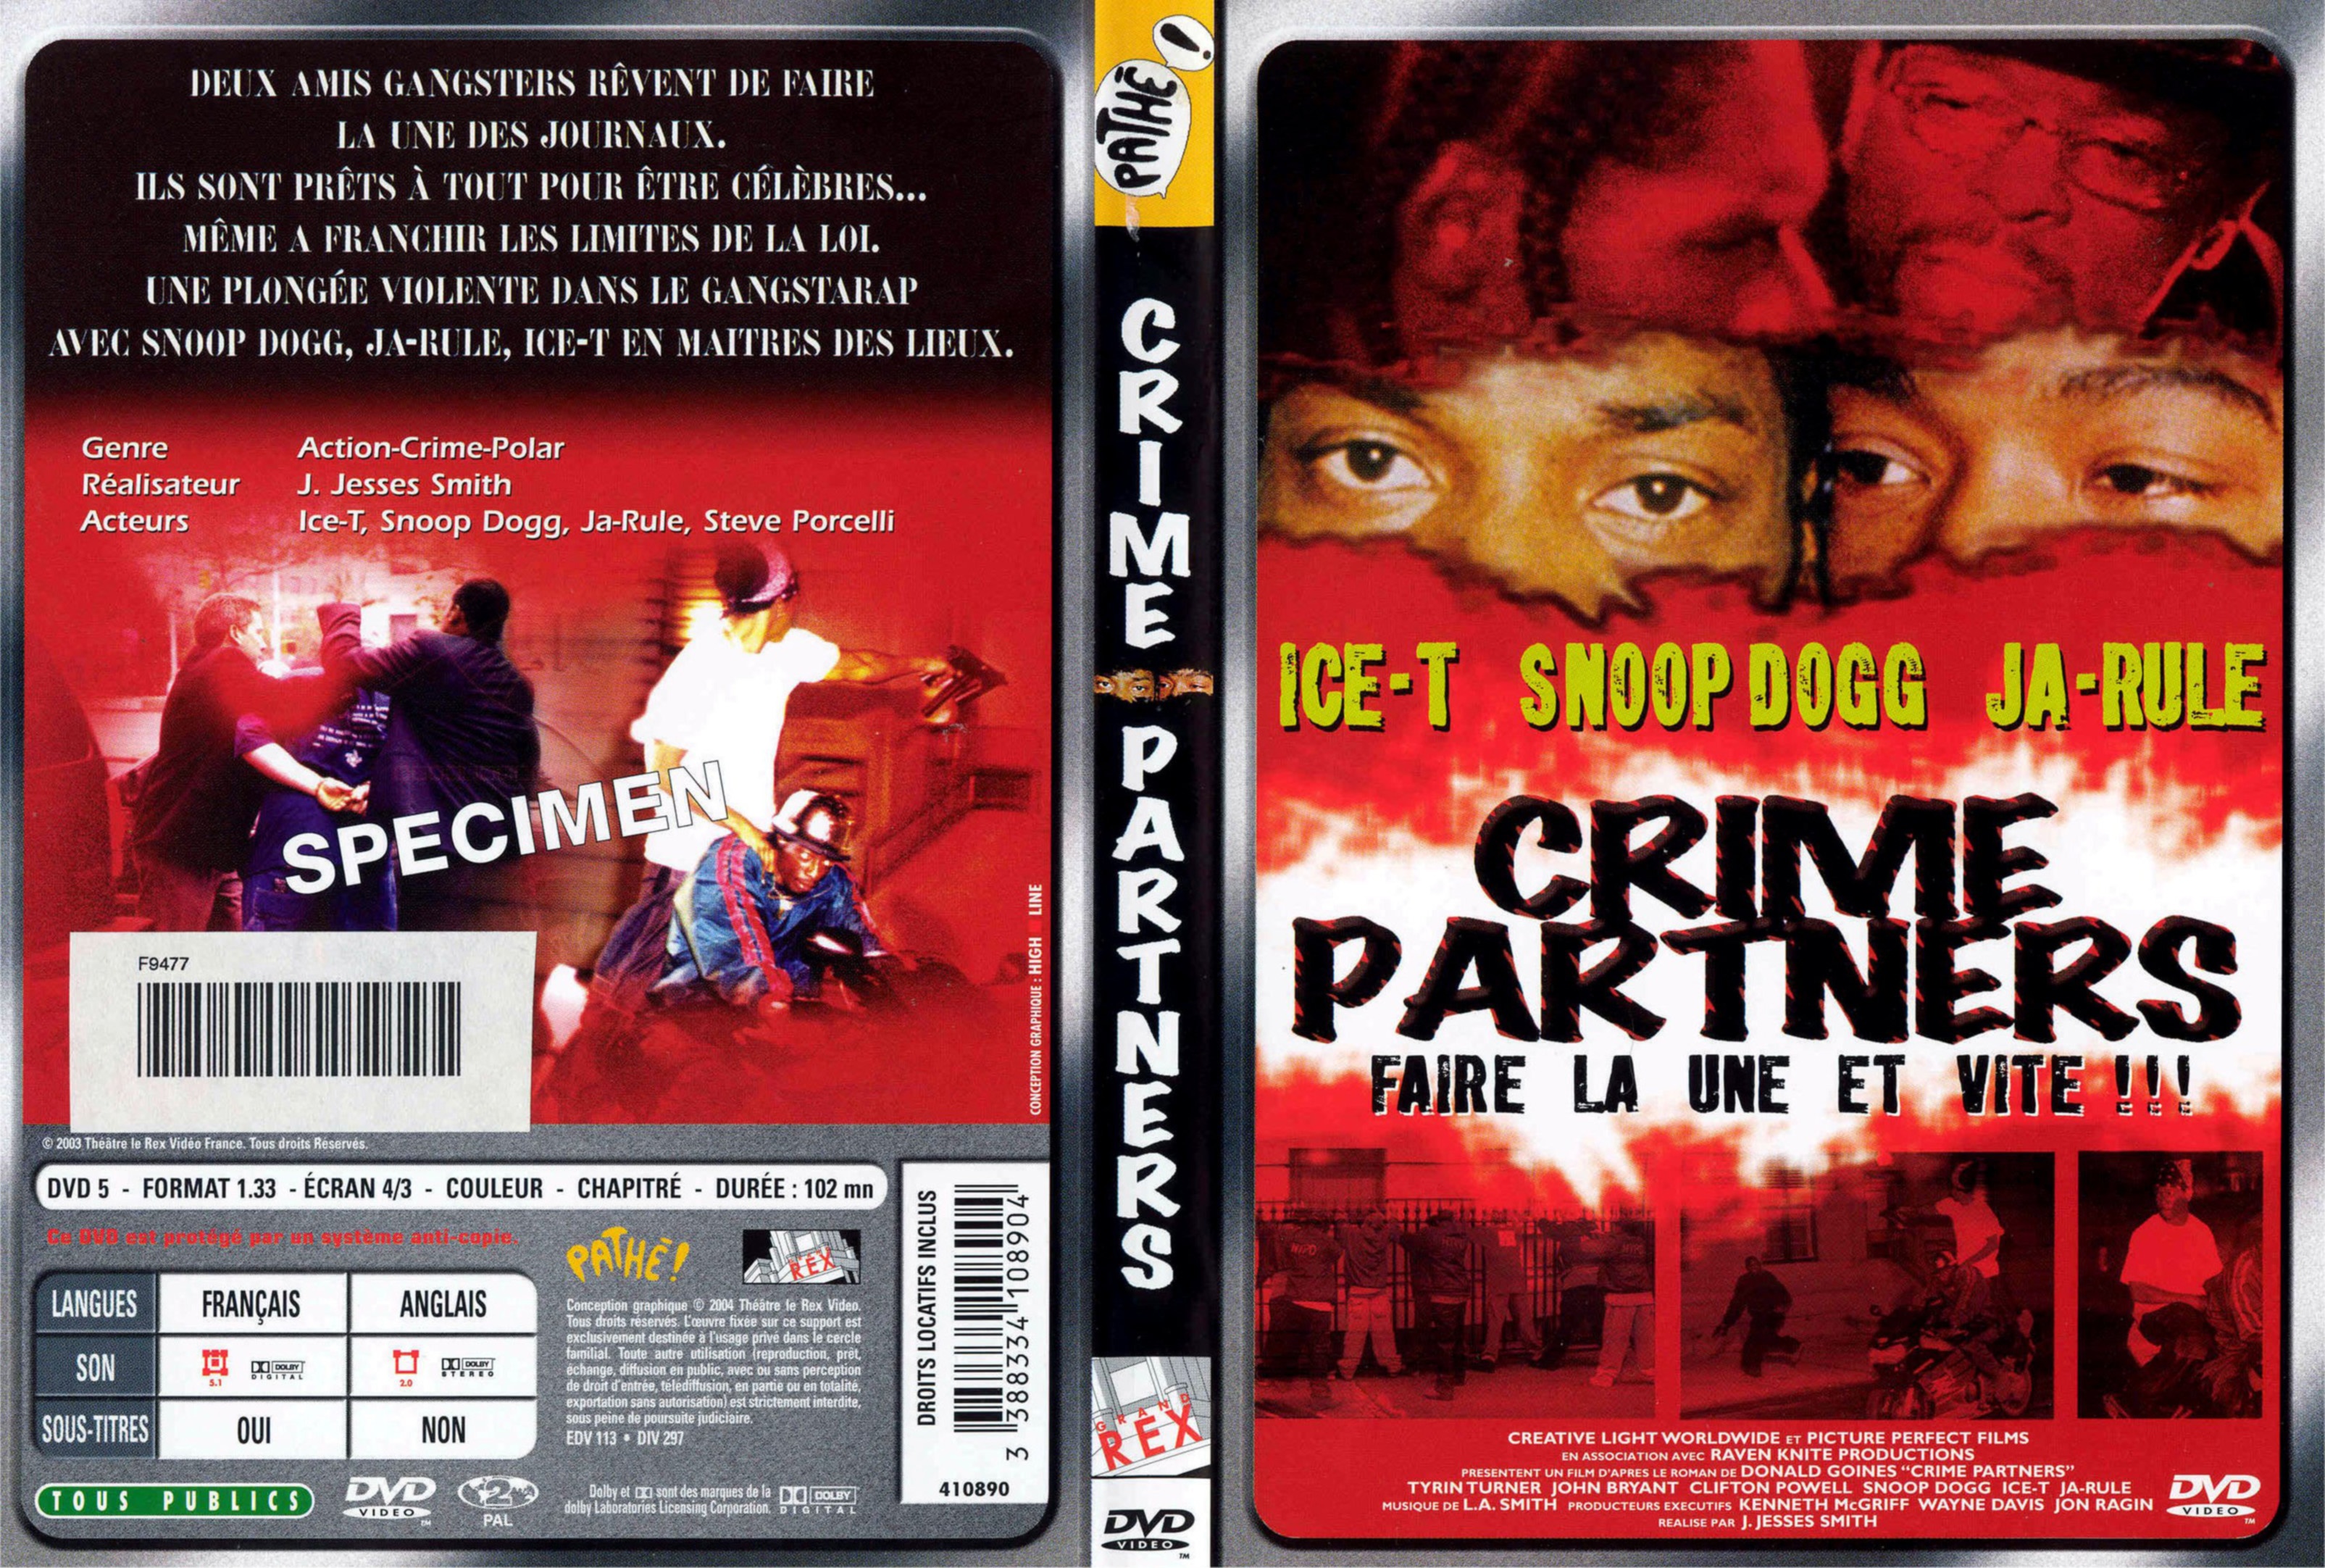 Jaquette DVD Crimes partners